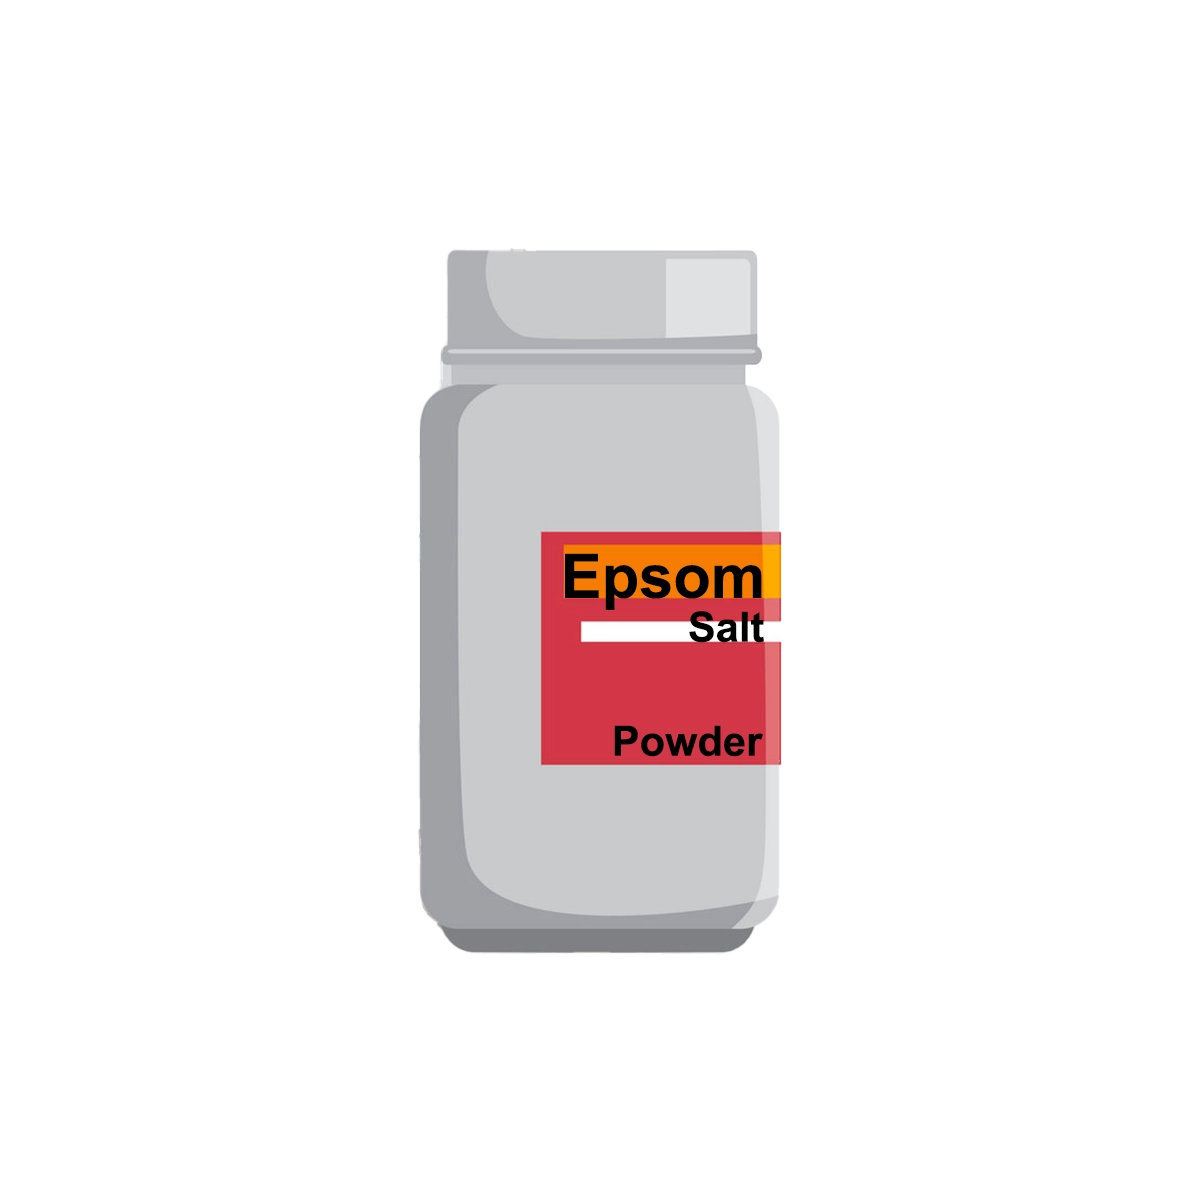 Epsom Salt Powder 50g